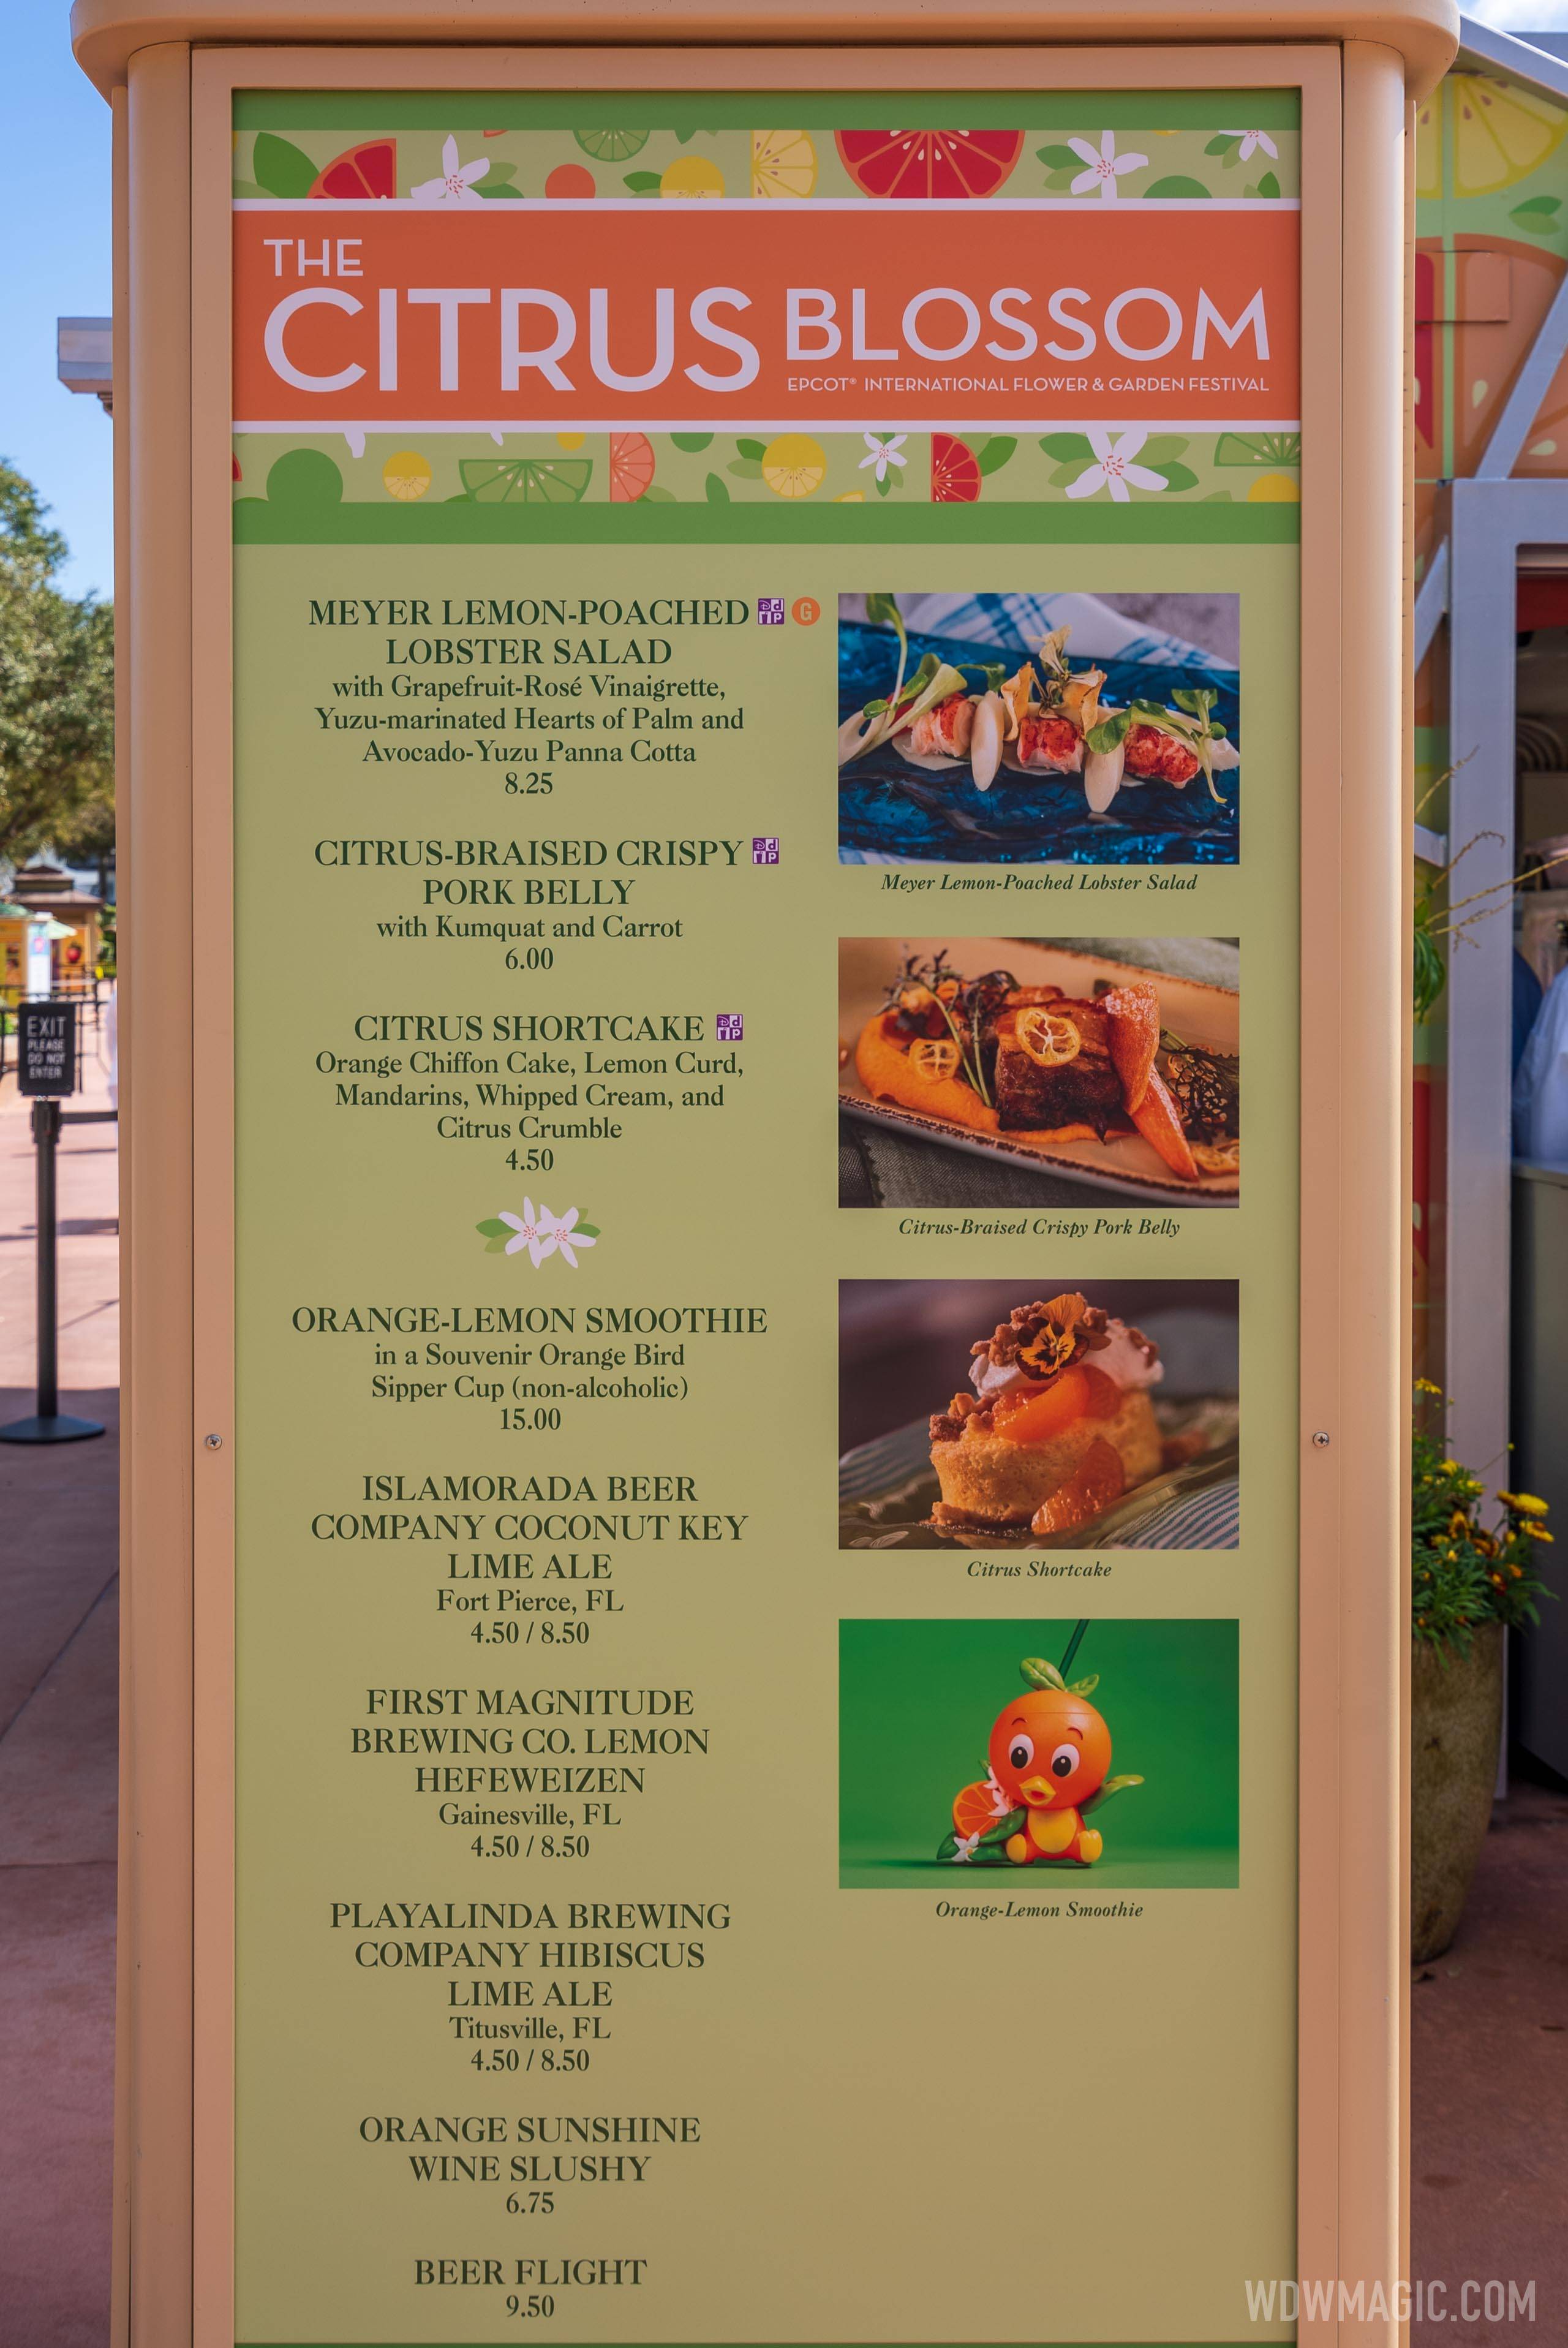 The Citrus Blossom kiosk menu